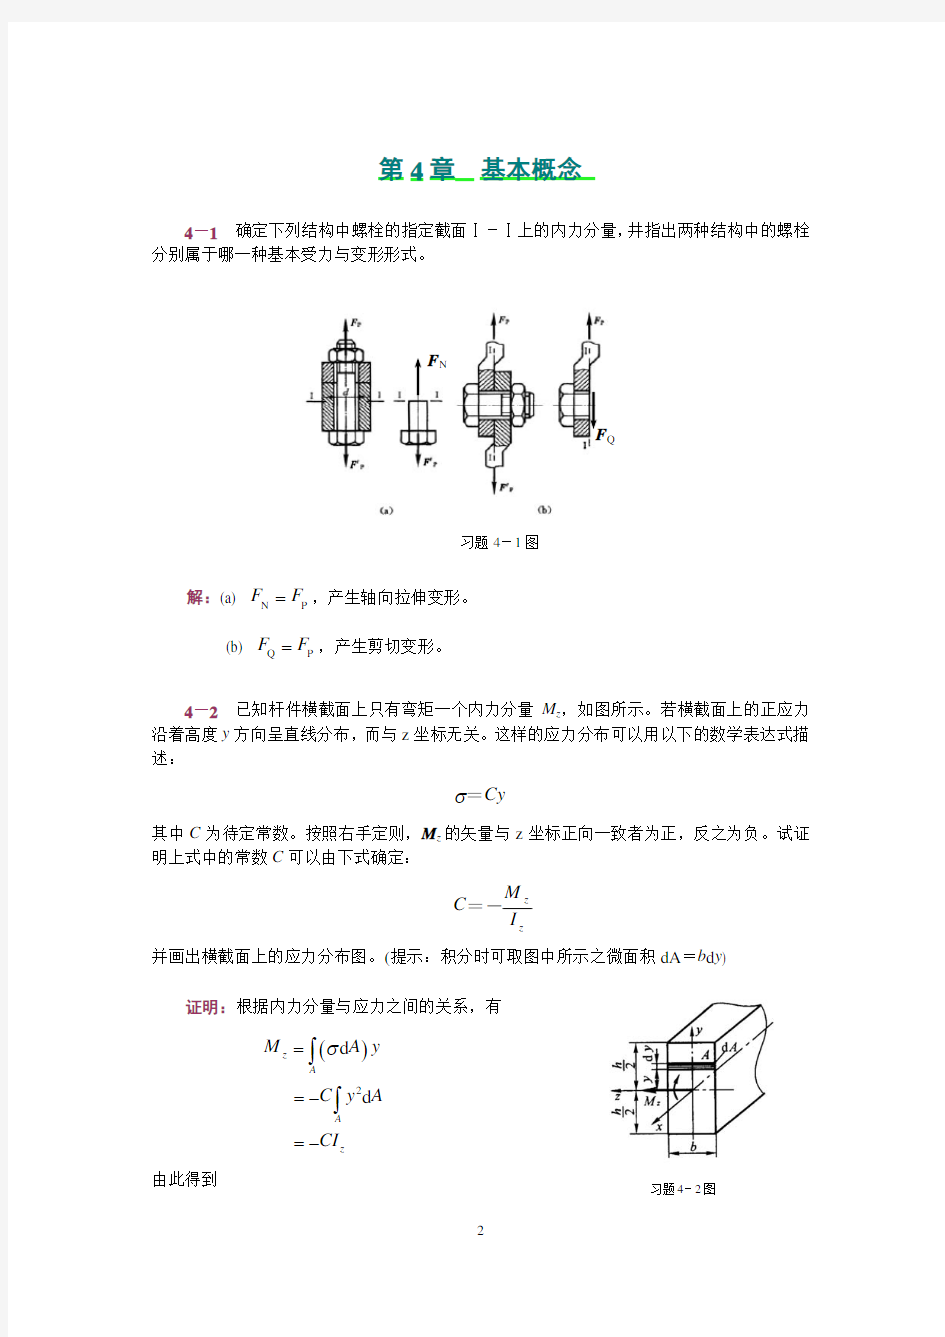 工程力学(静力学和材料力学)范钦珊主编答案全集 (4)